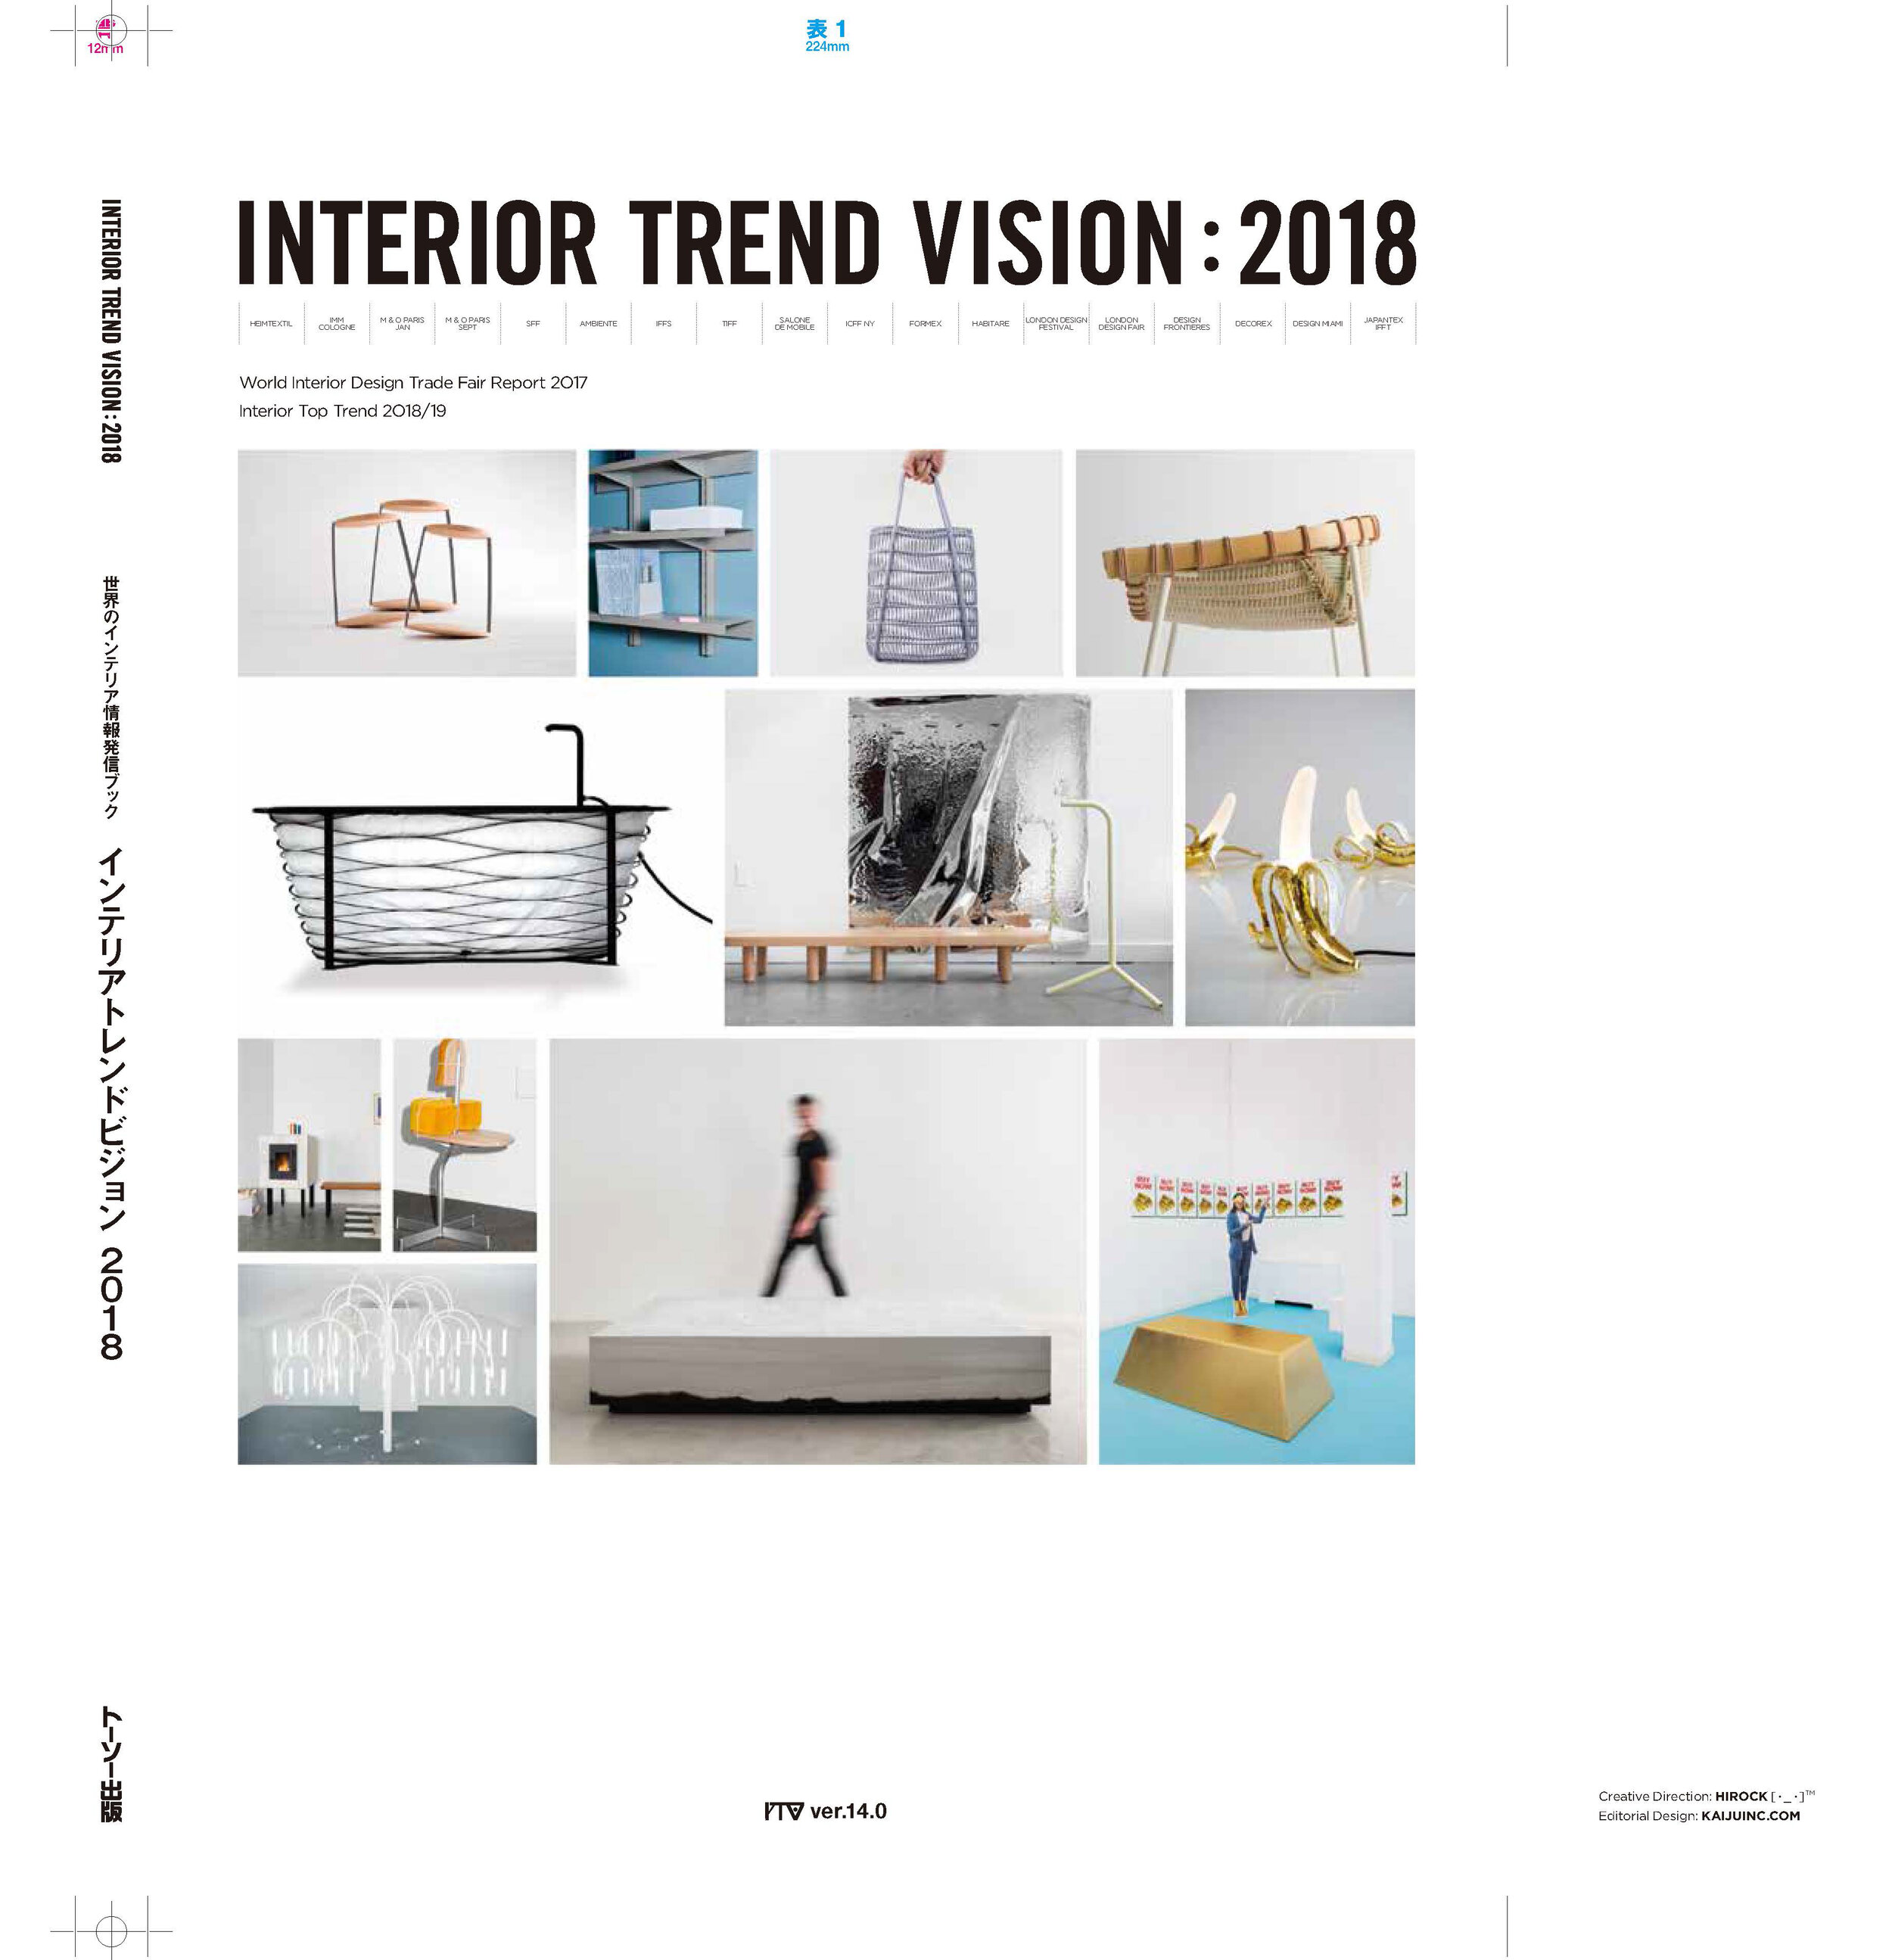 2018_Interior Trend Vision_Medium 1_COVER.jpg